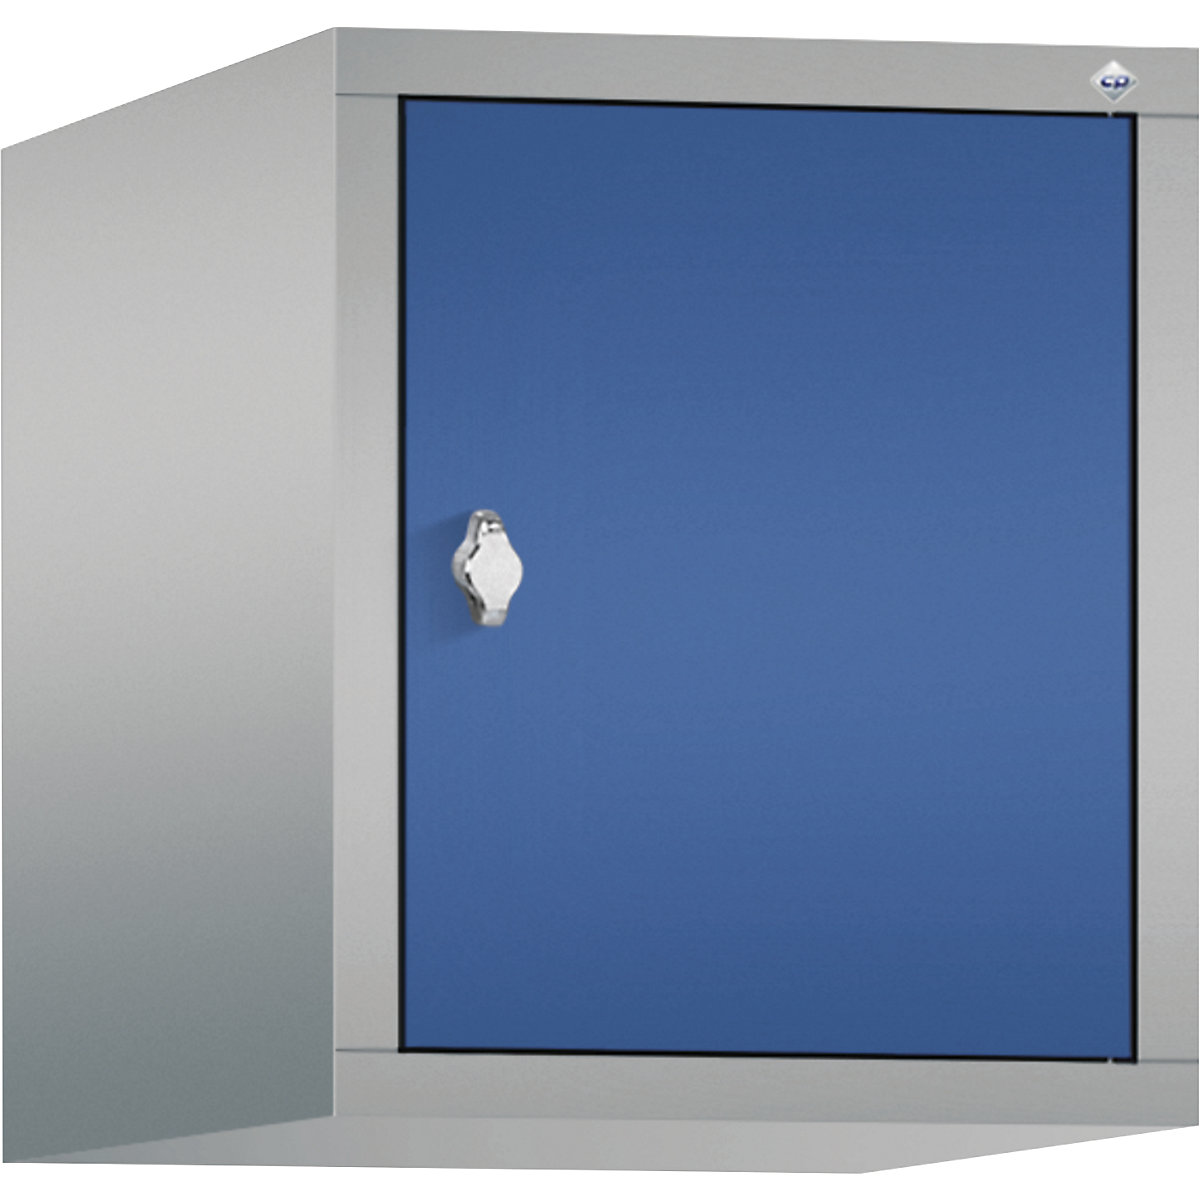 C+P – Altillo CLASSIC, 1 compartimento, anchura de compartimento 400 mm, aluminio blanco / azul genciana